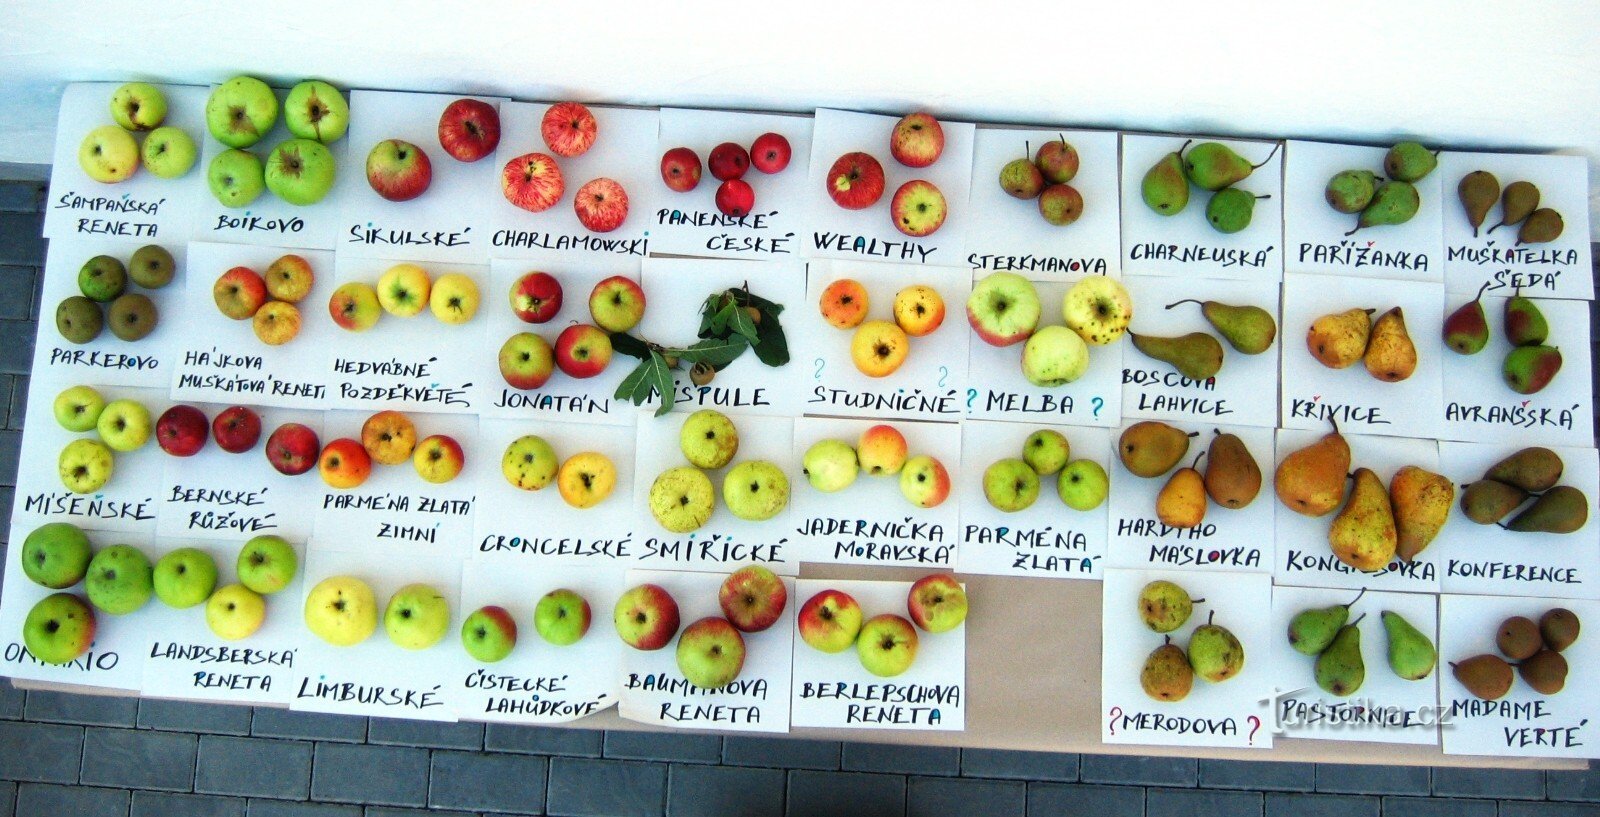 Jabolčnik iz Hostětína je narejen iz mešanice belokarpatskih sort jabolk jejic